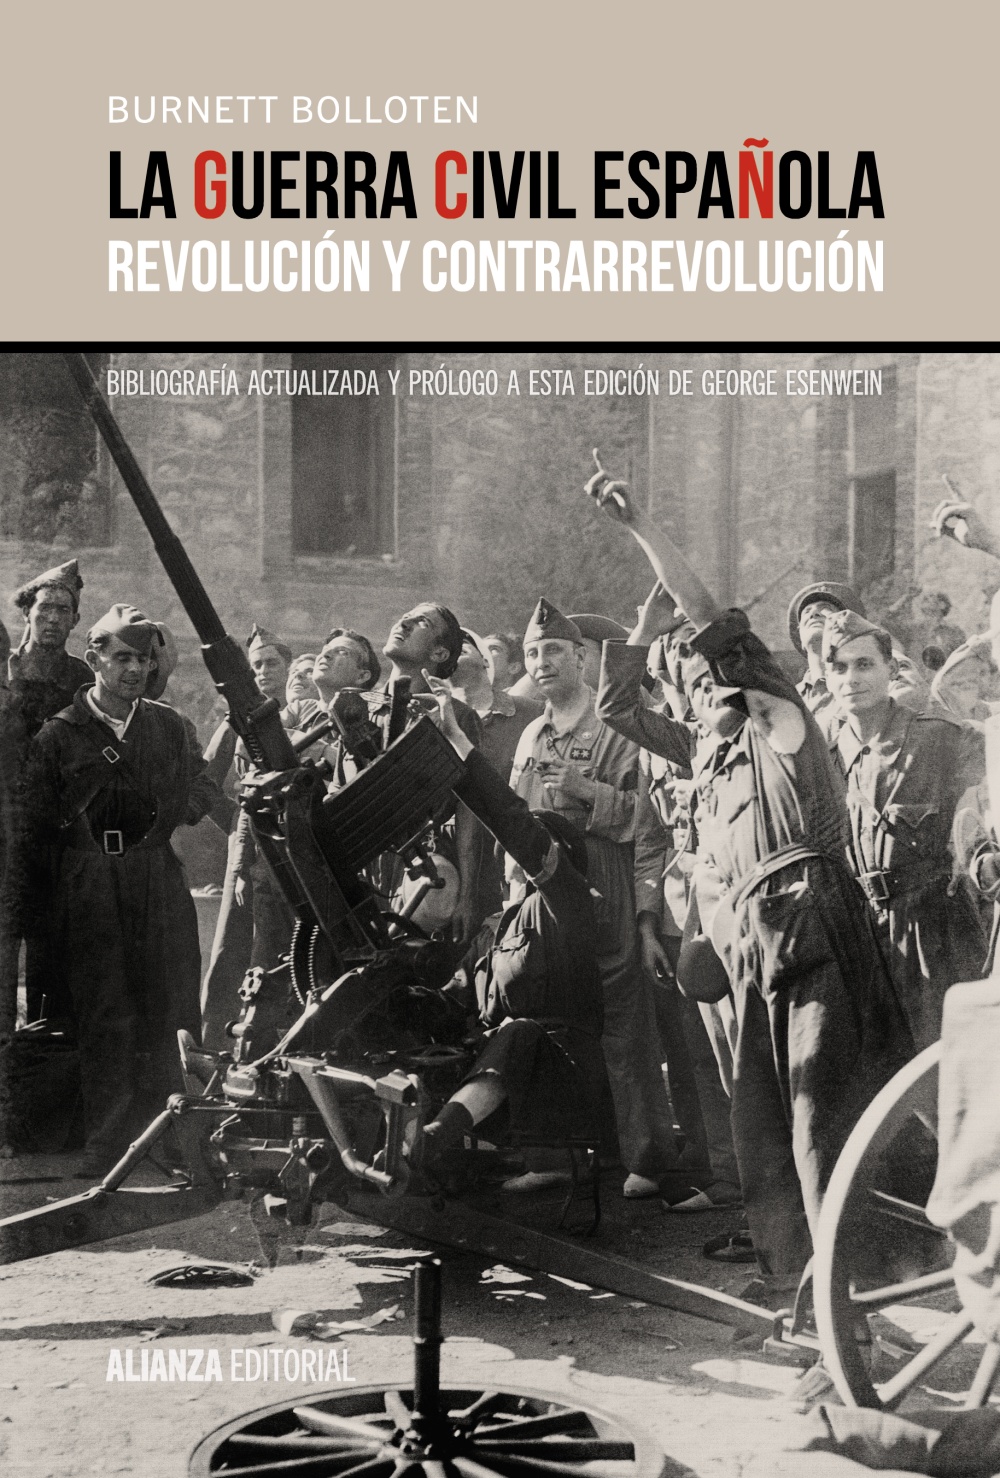 La guerra civil española - Alianza Editorial